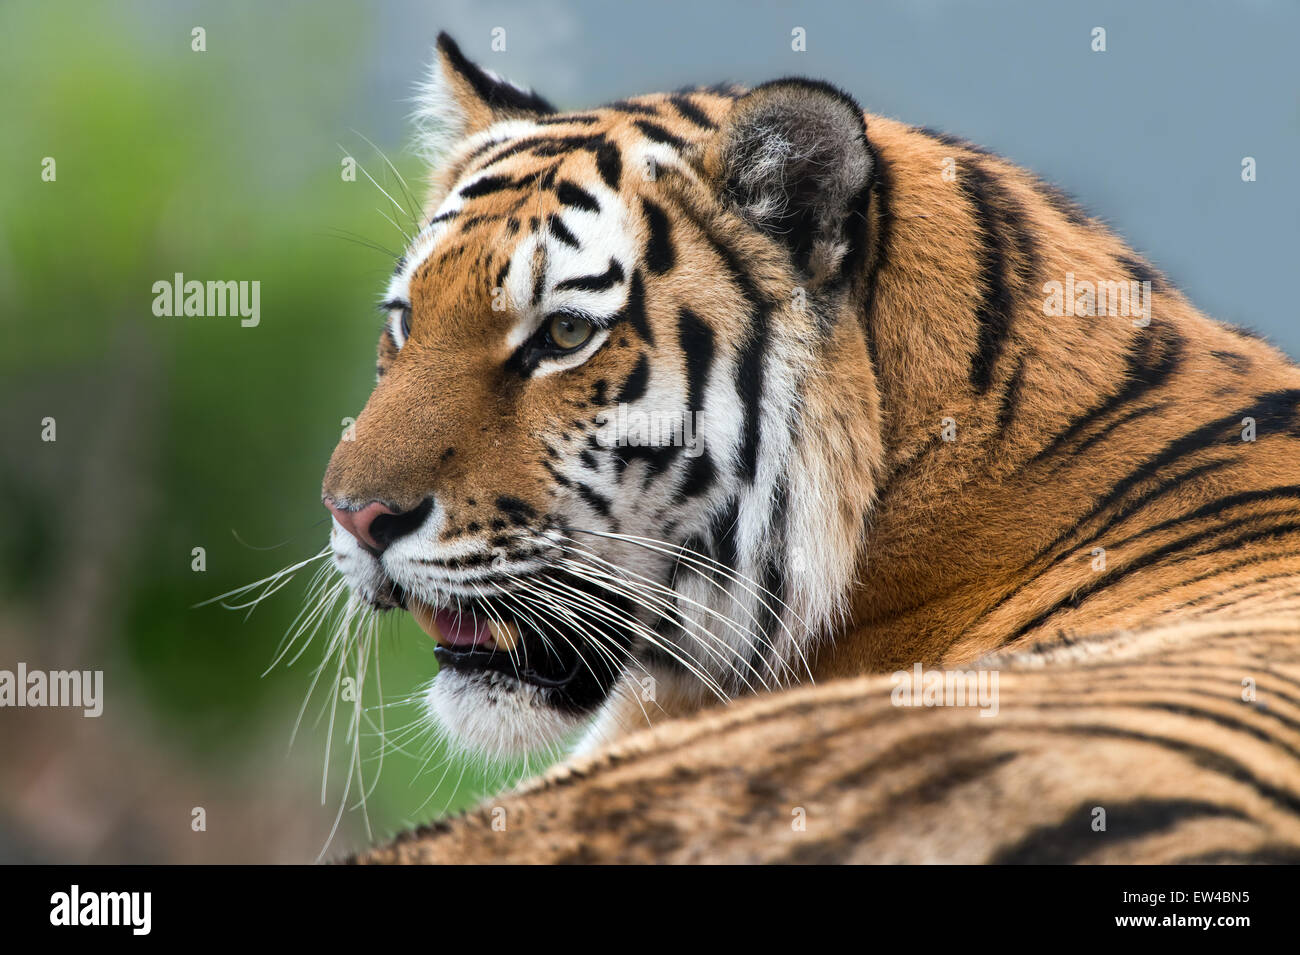 Siberian Tiger (panthera tigris altaica) Stock Photo